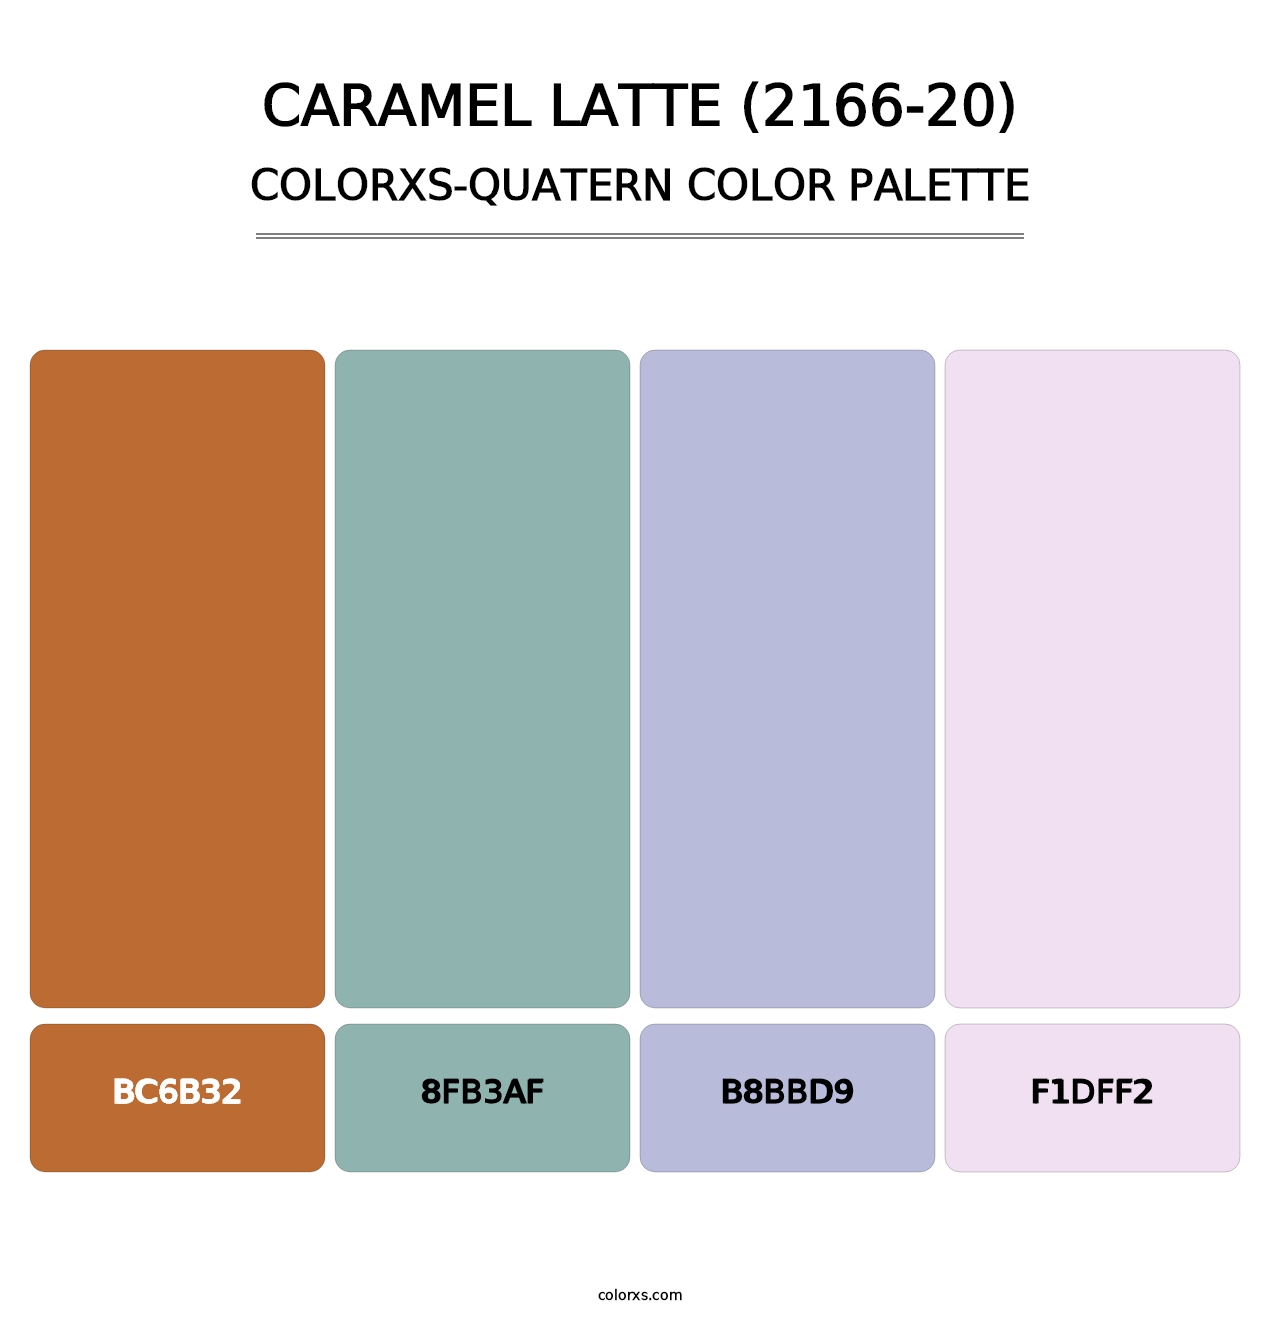 Caramel Latte (2166-20) - Colorxs Quatern Palette